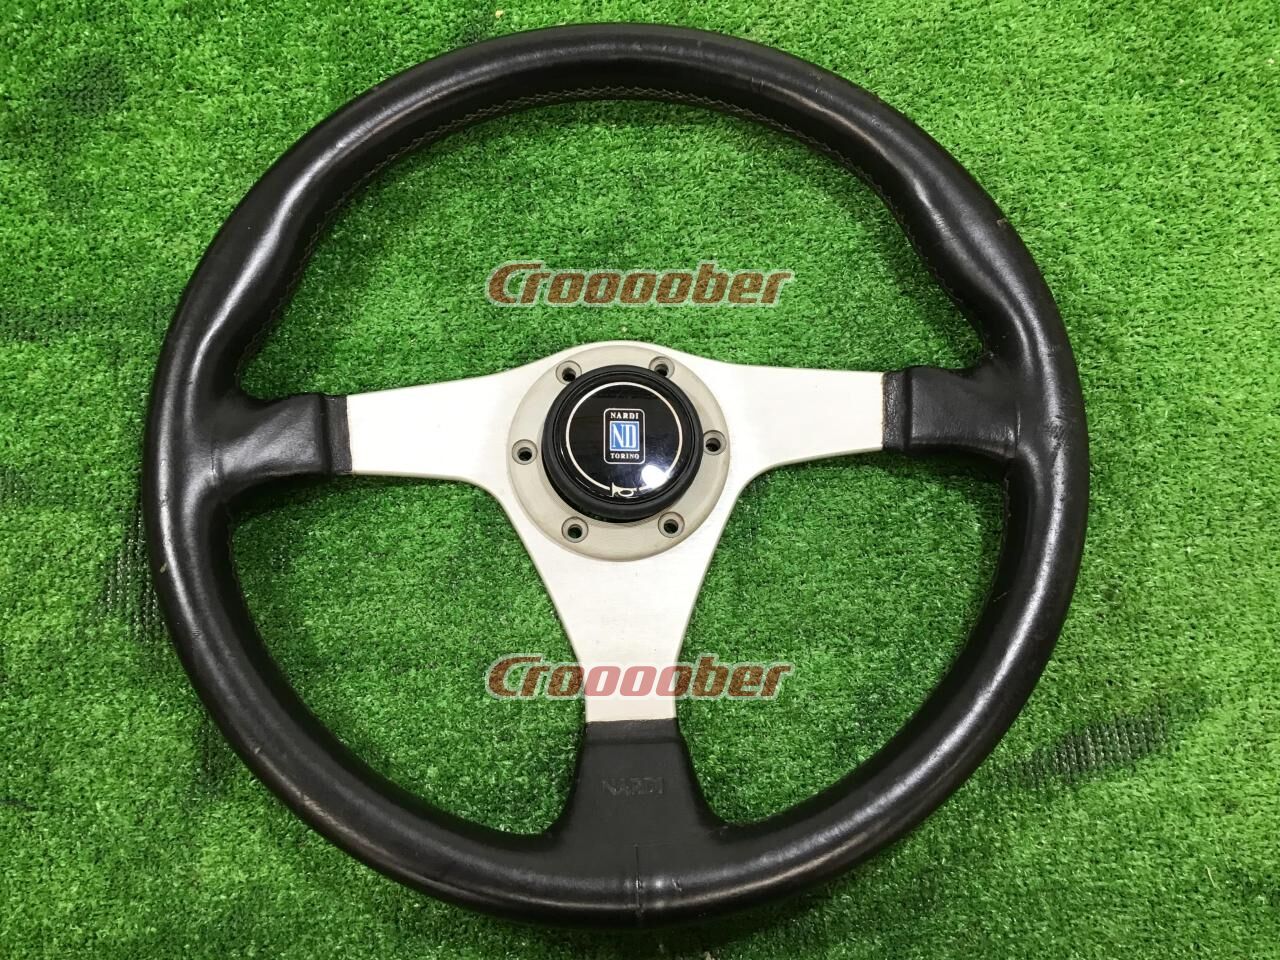 Single Spoke Steering Wheel